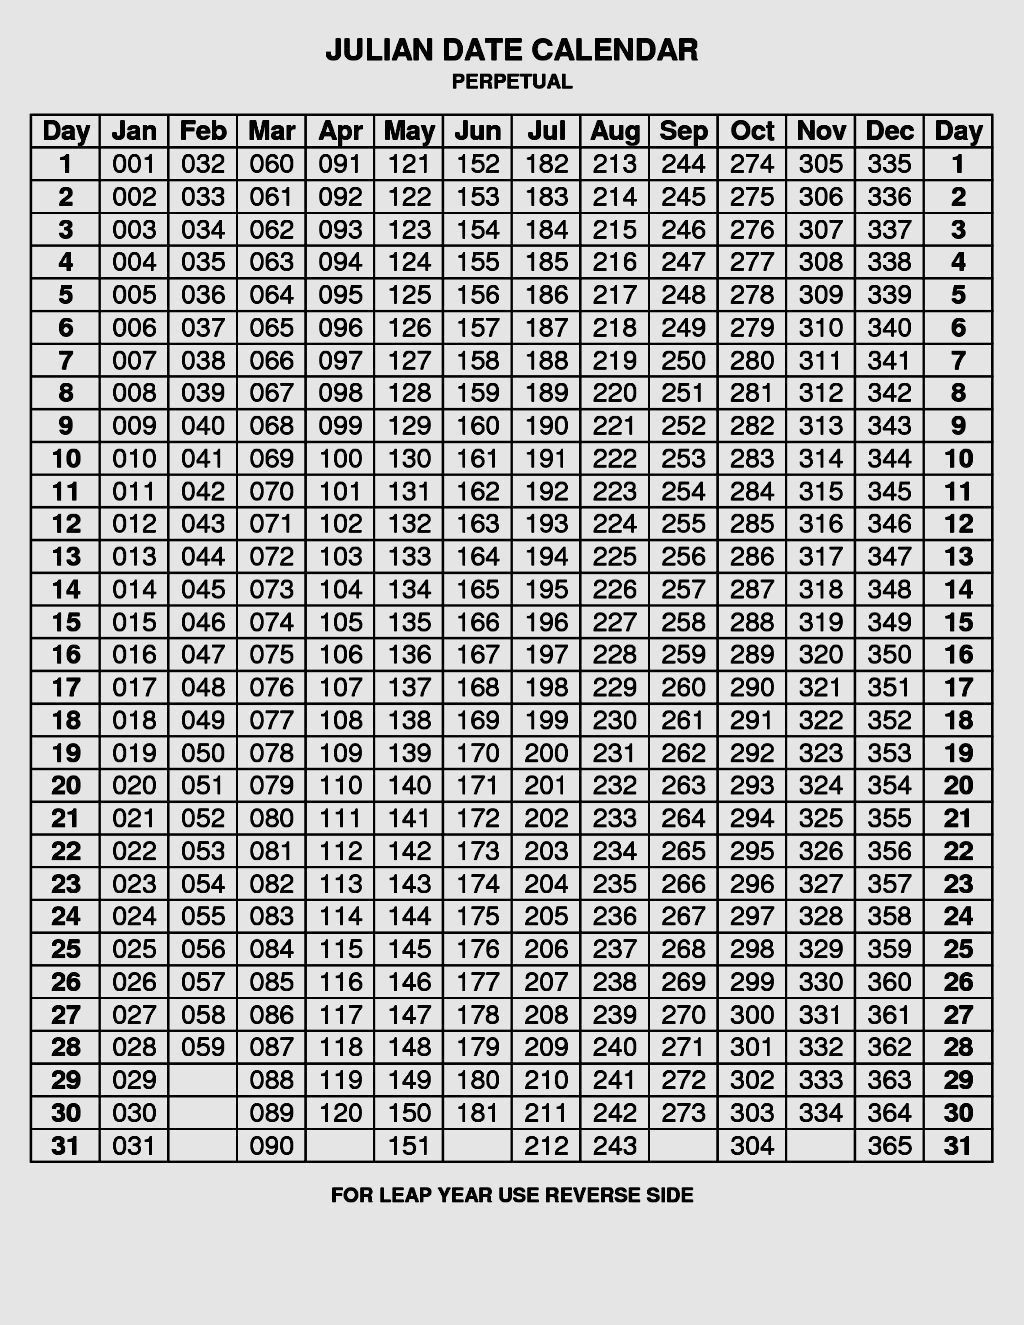 Depo Provera Calendar 2021 Calculator  Template Calendar pertaining to Depo Calendar For 2021